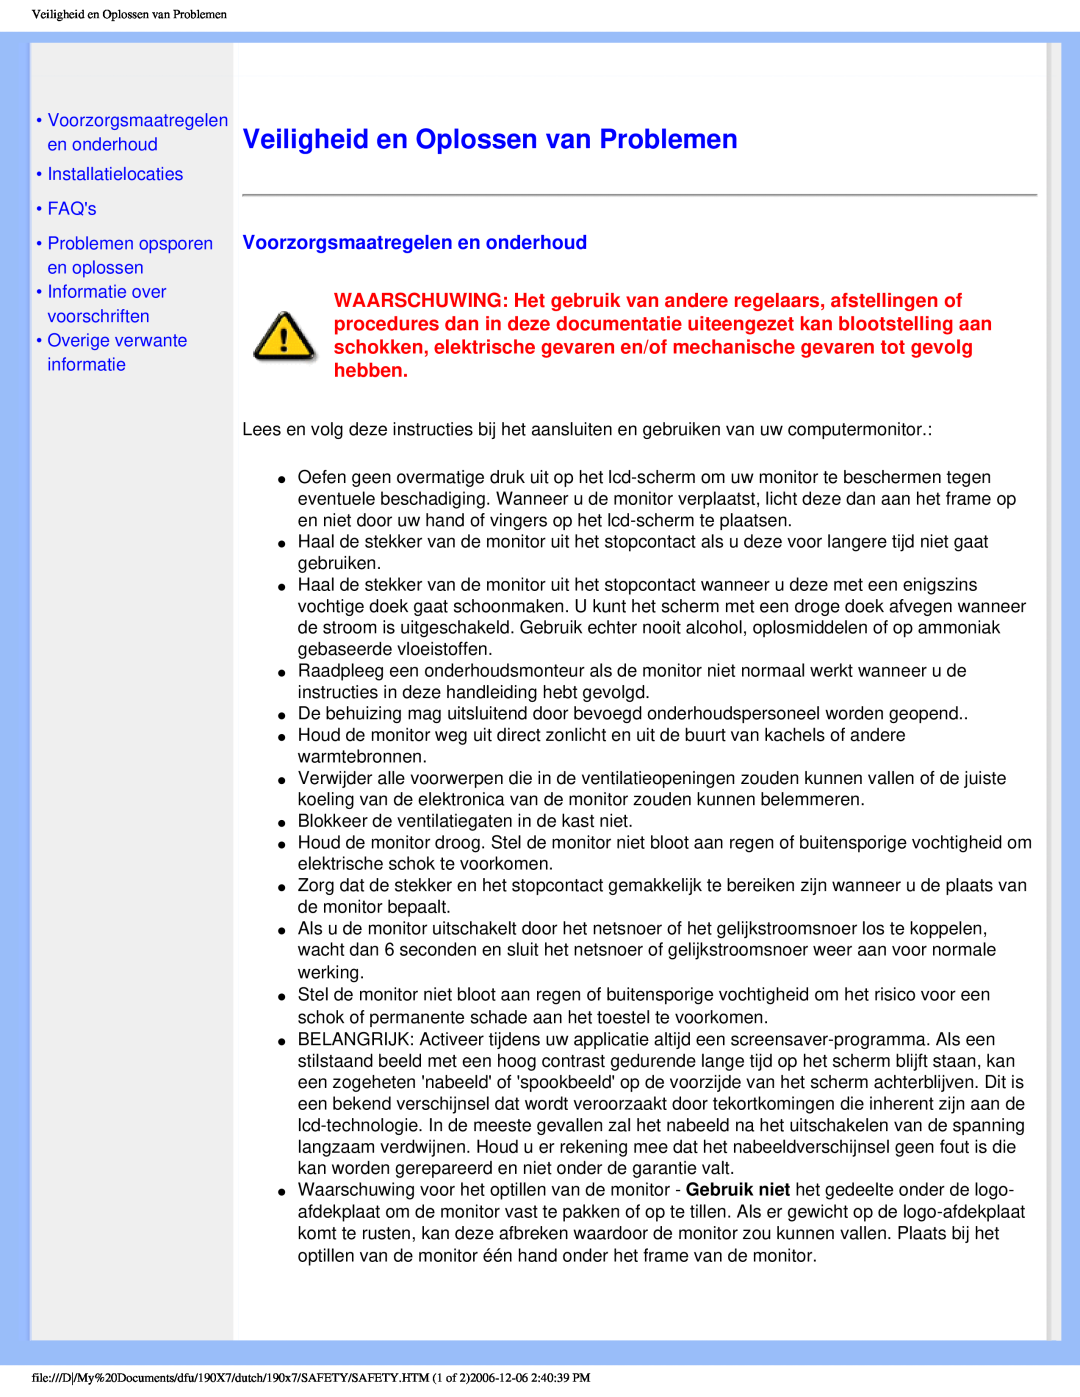 Philips 190X7 Veiligheid en Oplossen van Problemen, Voorzorgsmaatregelen en onderhoud, •Installatielocaties •FAQs 